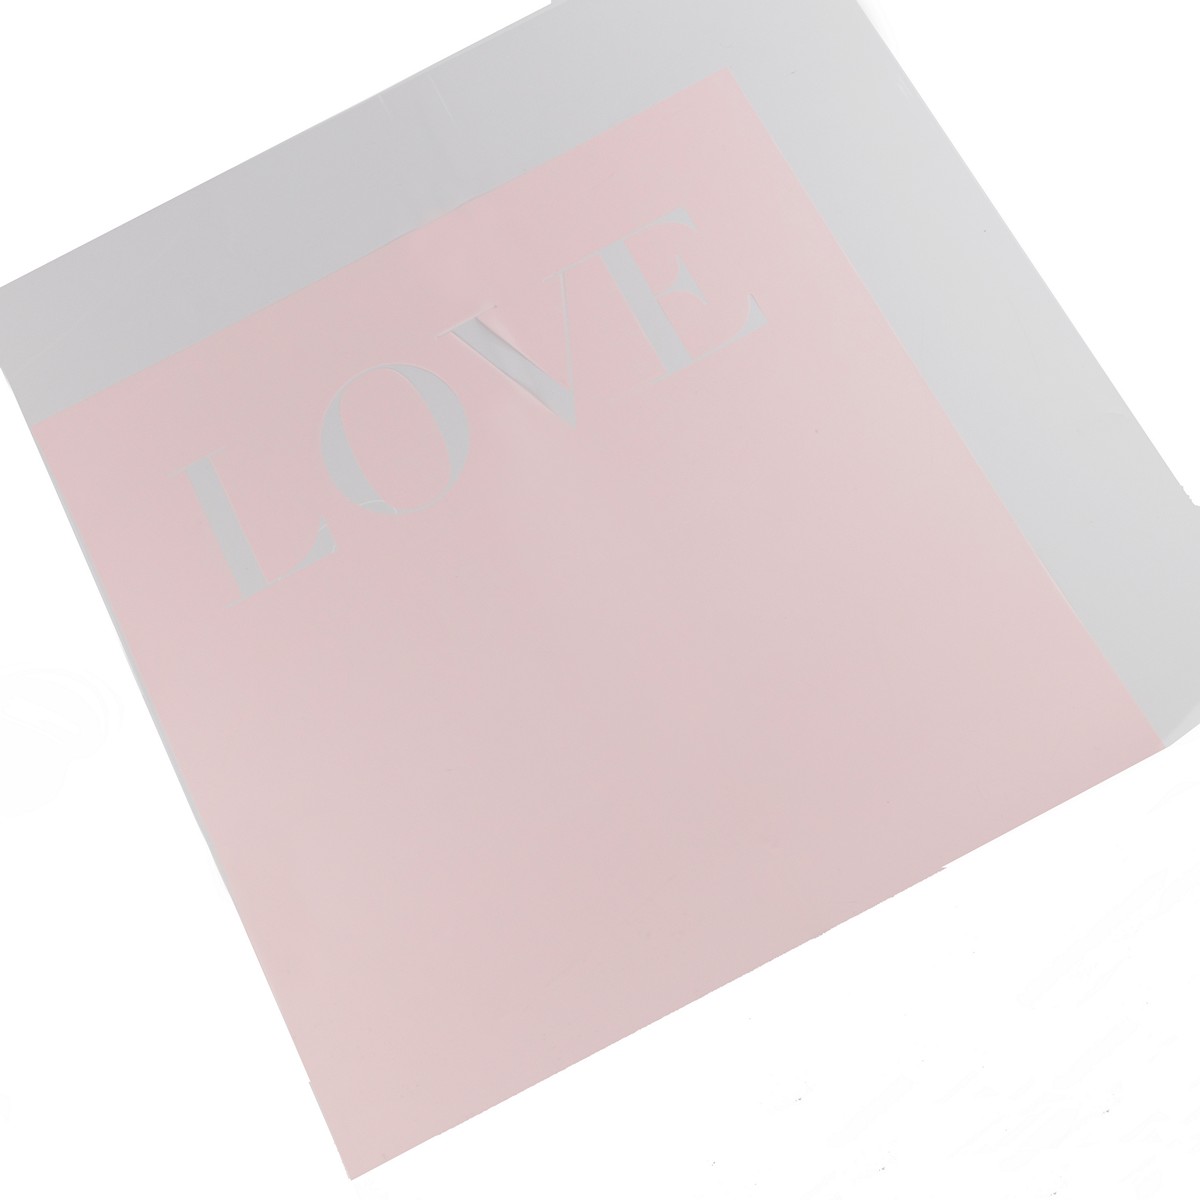 P.CAXL-LOVE-165, Пленка Love, 20 листов, 58х58см, розовый, 4627197646796